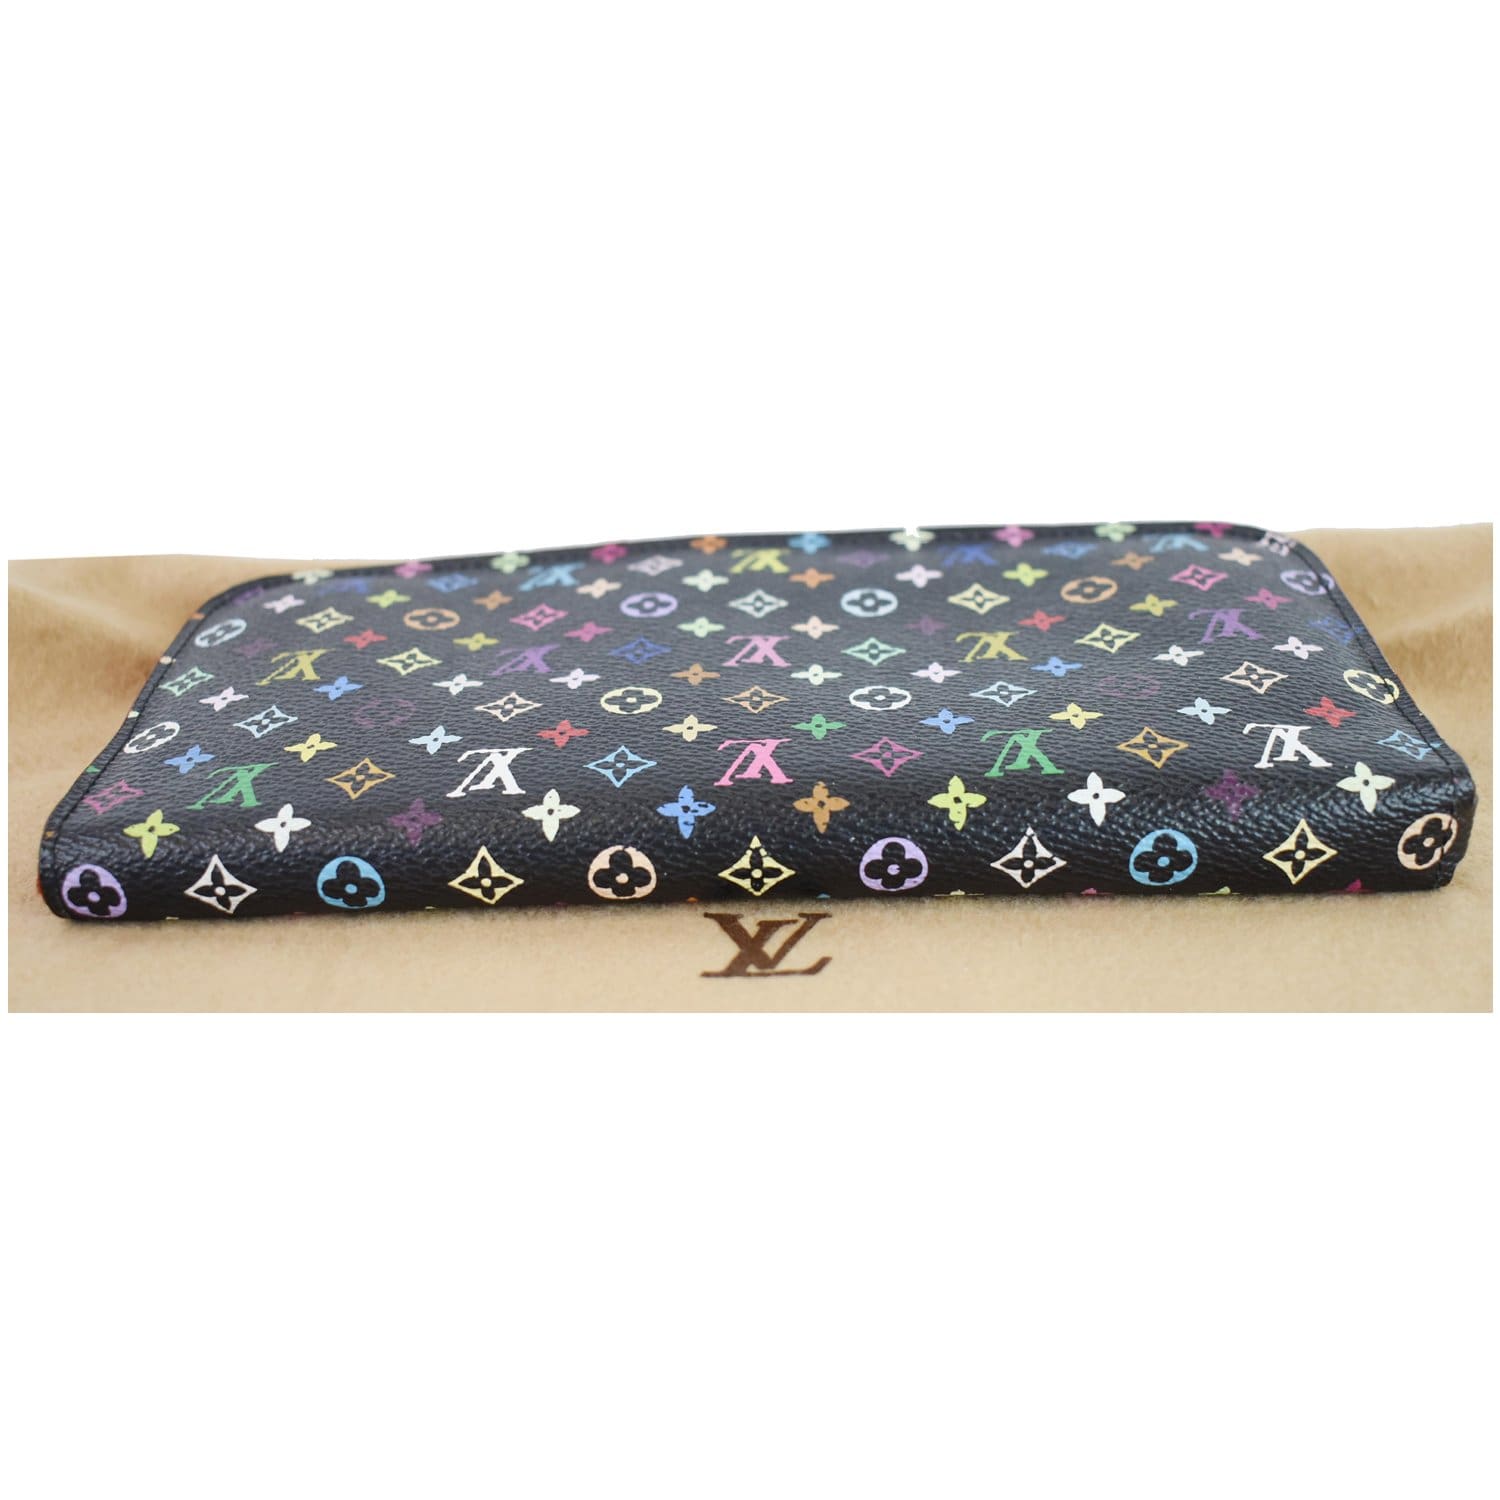 Louis Vuitton Insolite Wallet Monogram Multicolor - ShopStyle